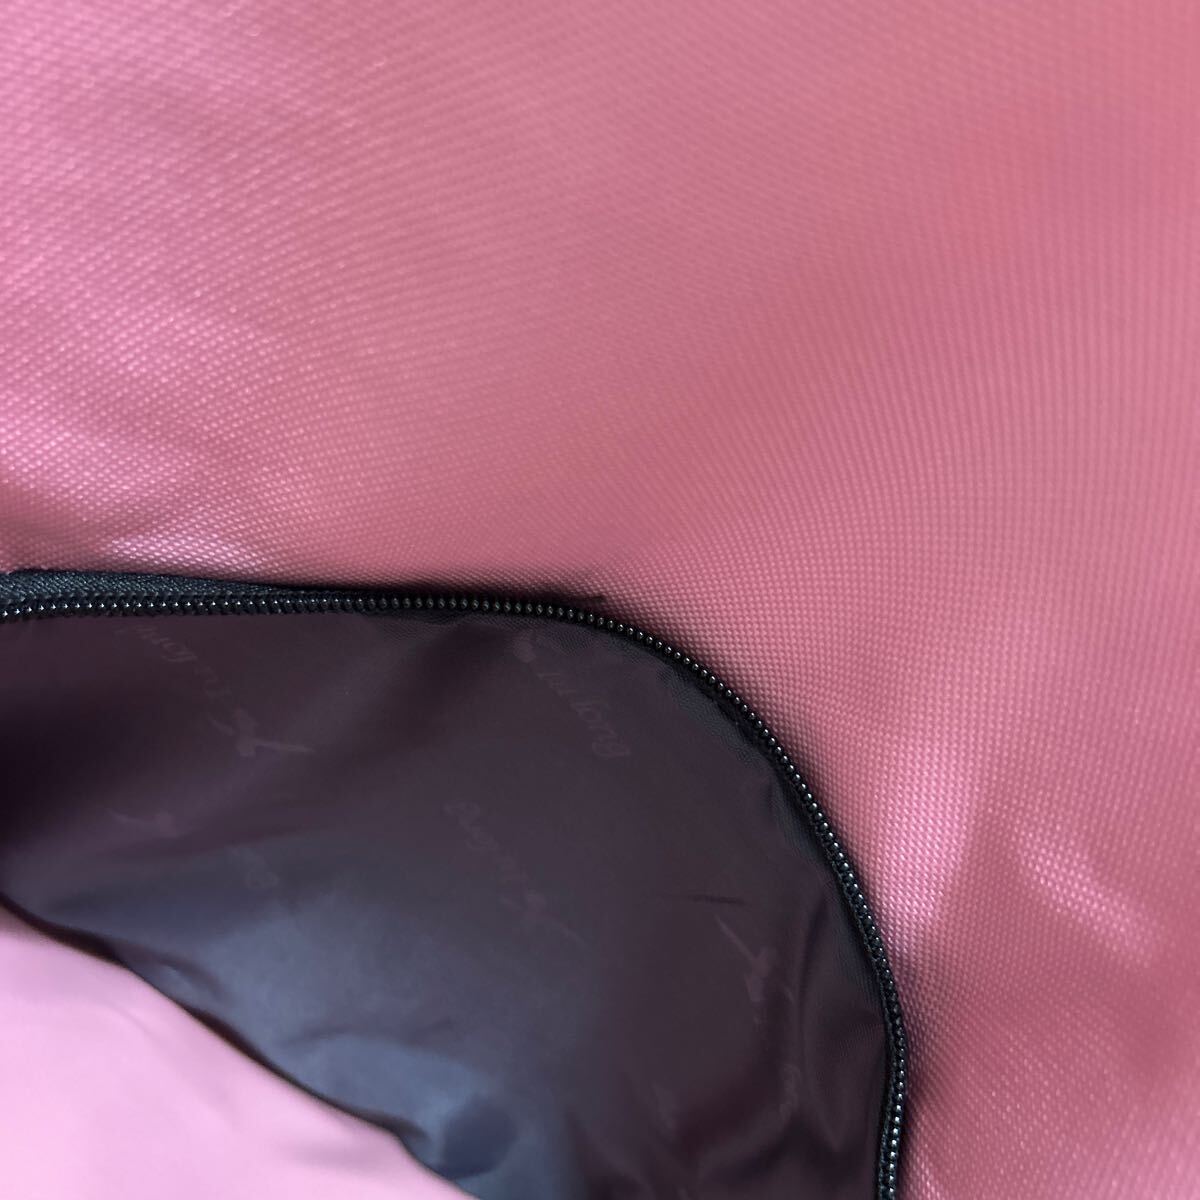  new goods unused XIU LONG pink rucksack backpack 